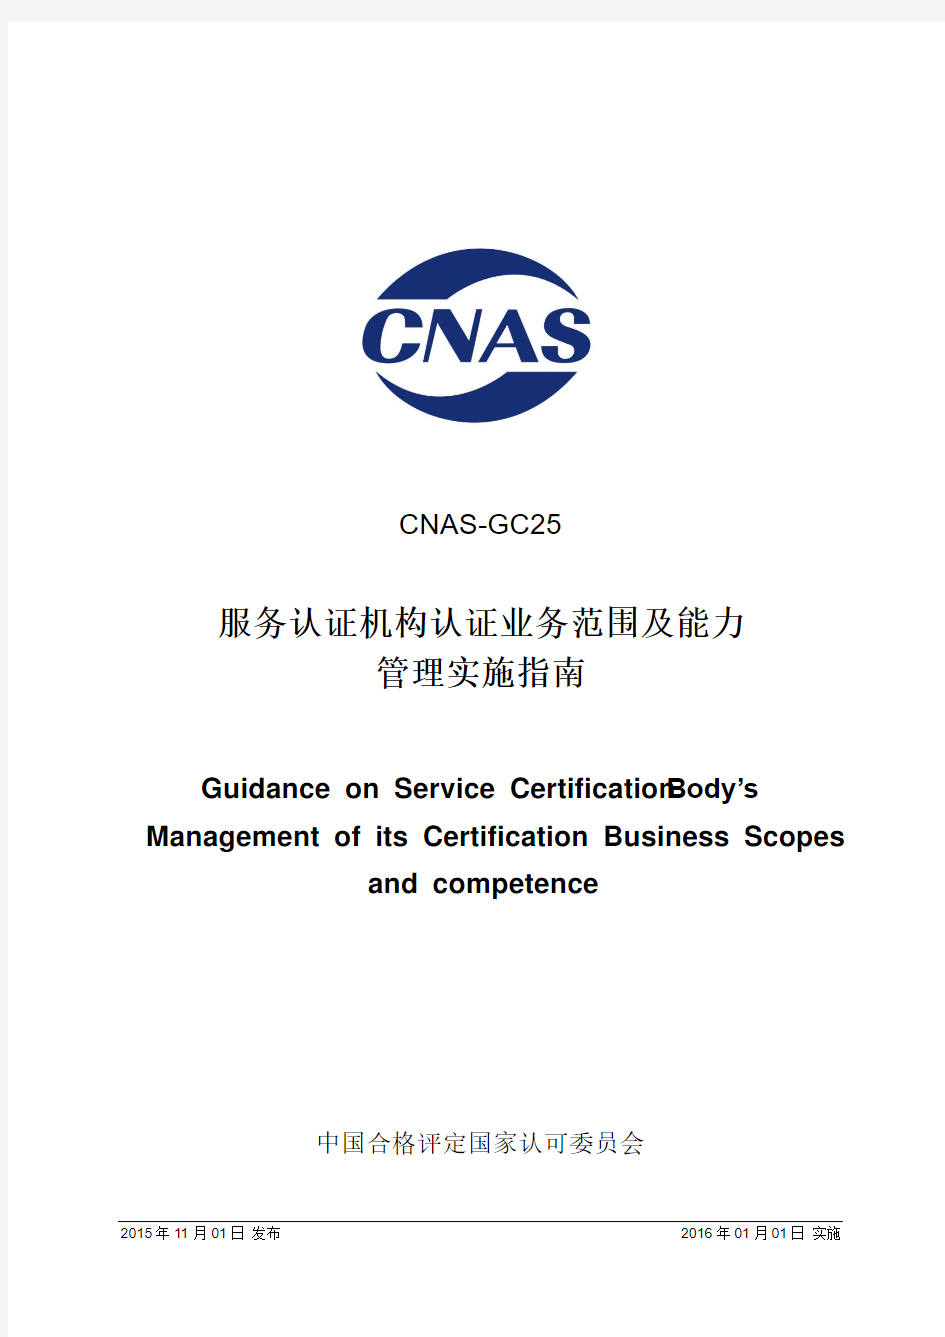 服务认证机构认证业务范围及能力管理实施指南